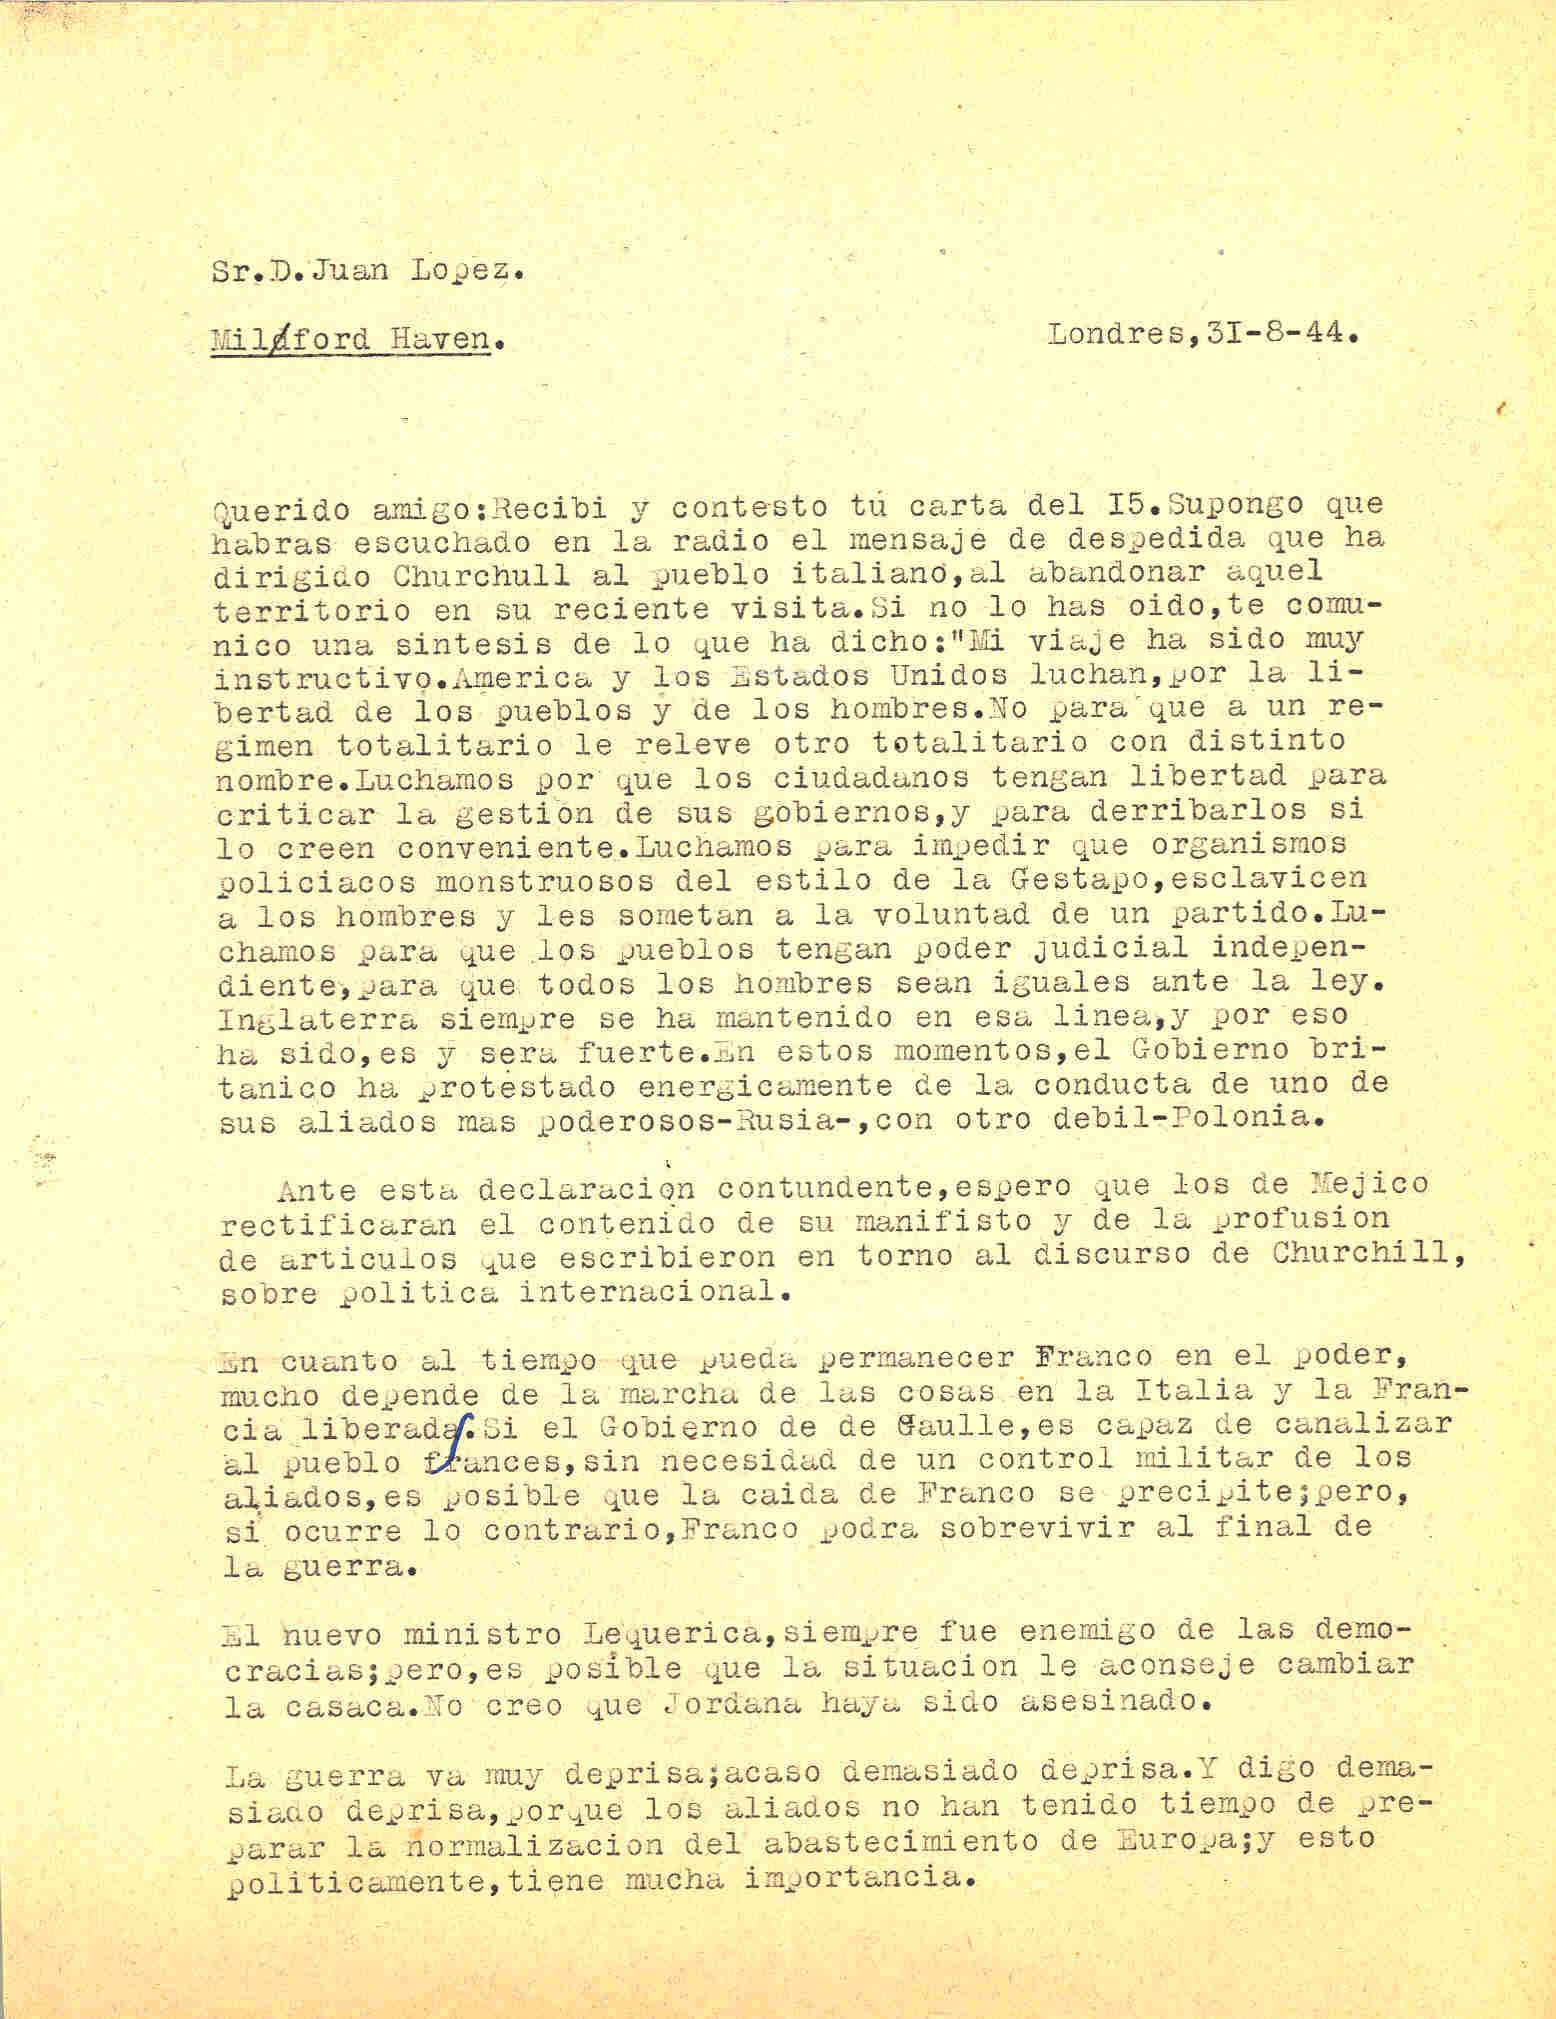 Carta de Segismundo Casado en la que transcribe un fragmento de un discurso de Churchill dirigido al pueblo italiano; y habla del tiempo que permanecerá Franco en el poder.